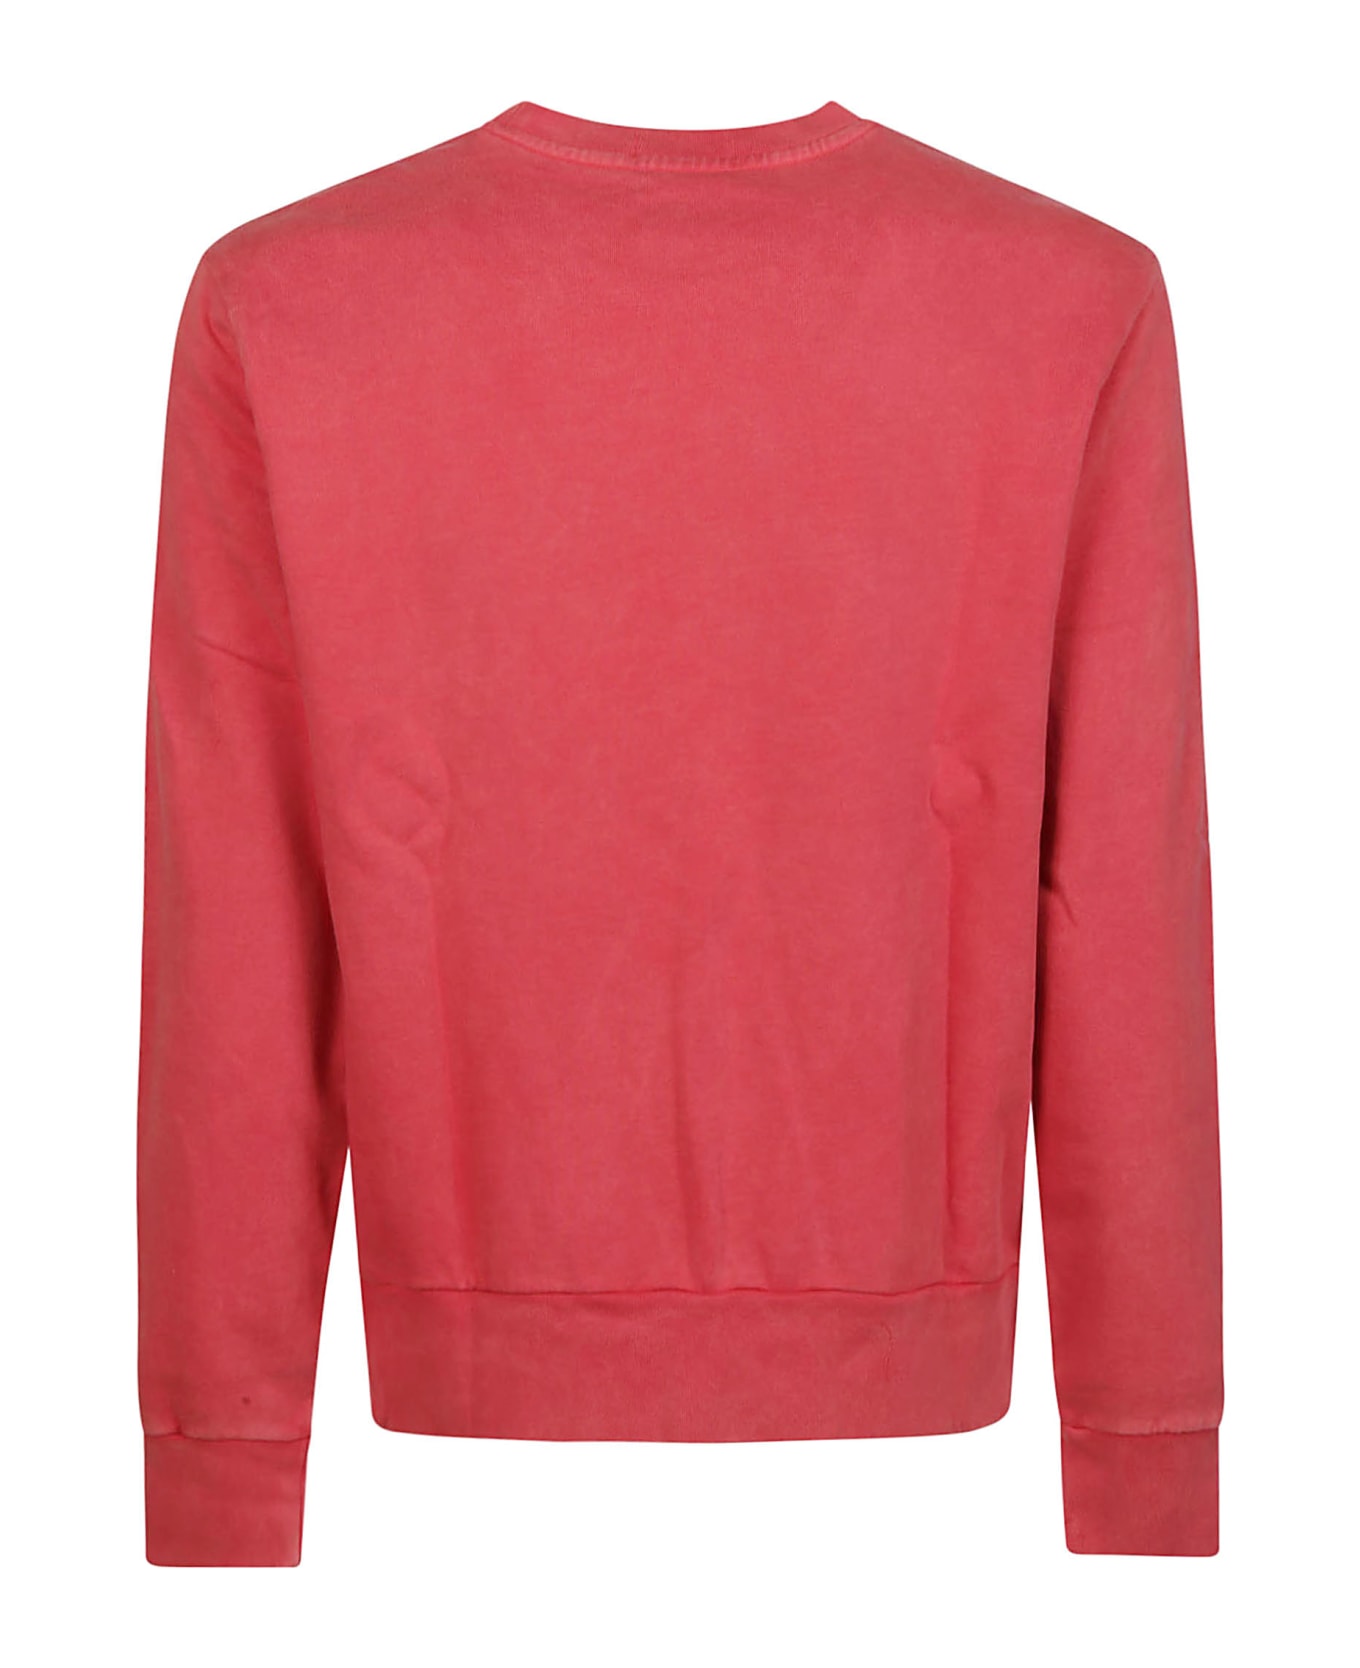 Polo Ralph Lauren Terry Sweatshirt - Post Red